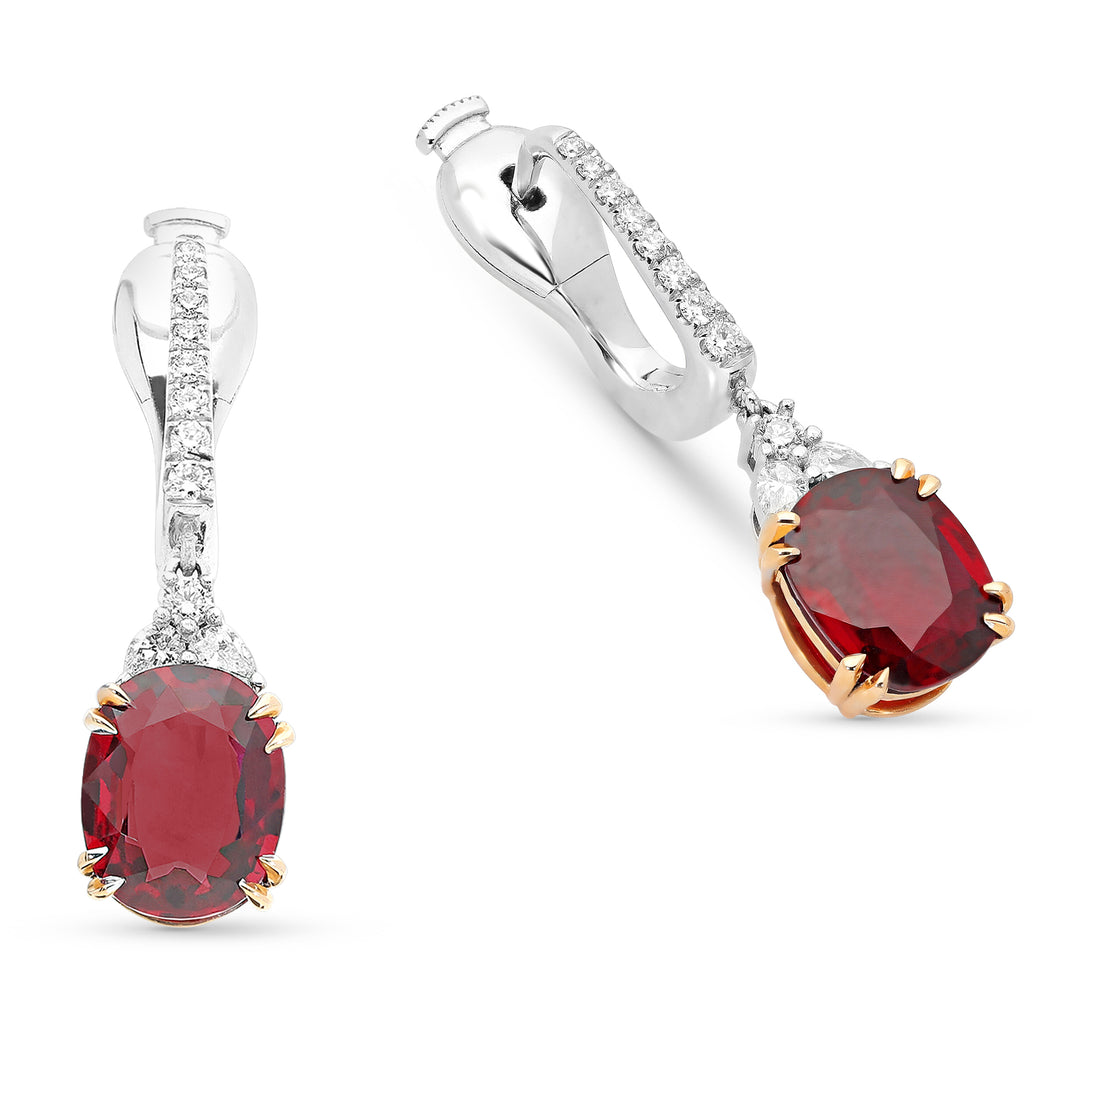 Oval Cut Red Ruby Drop Earrings - 5 Carat